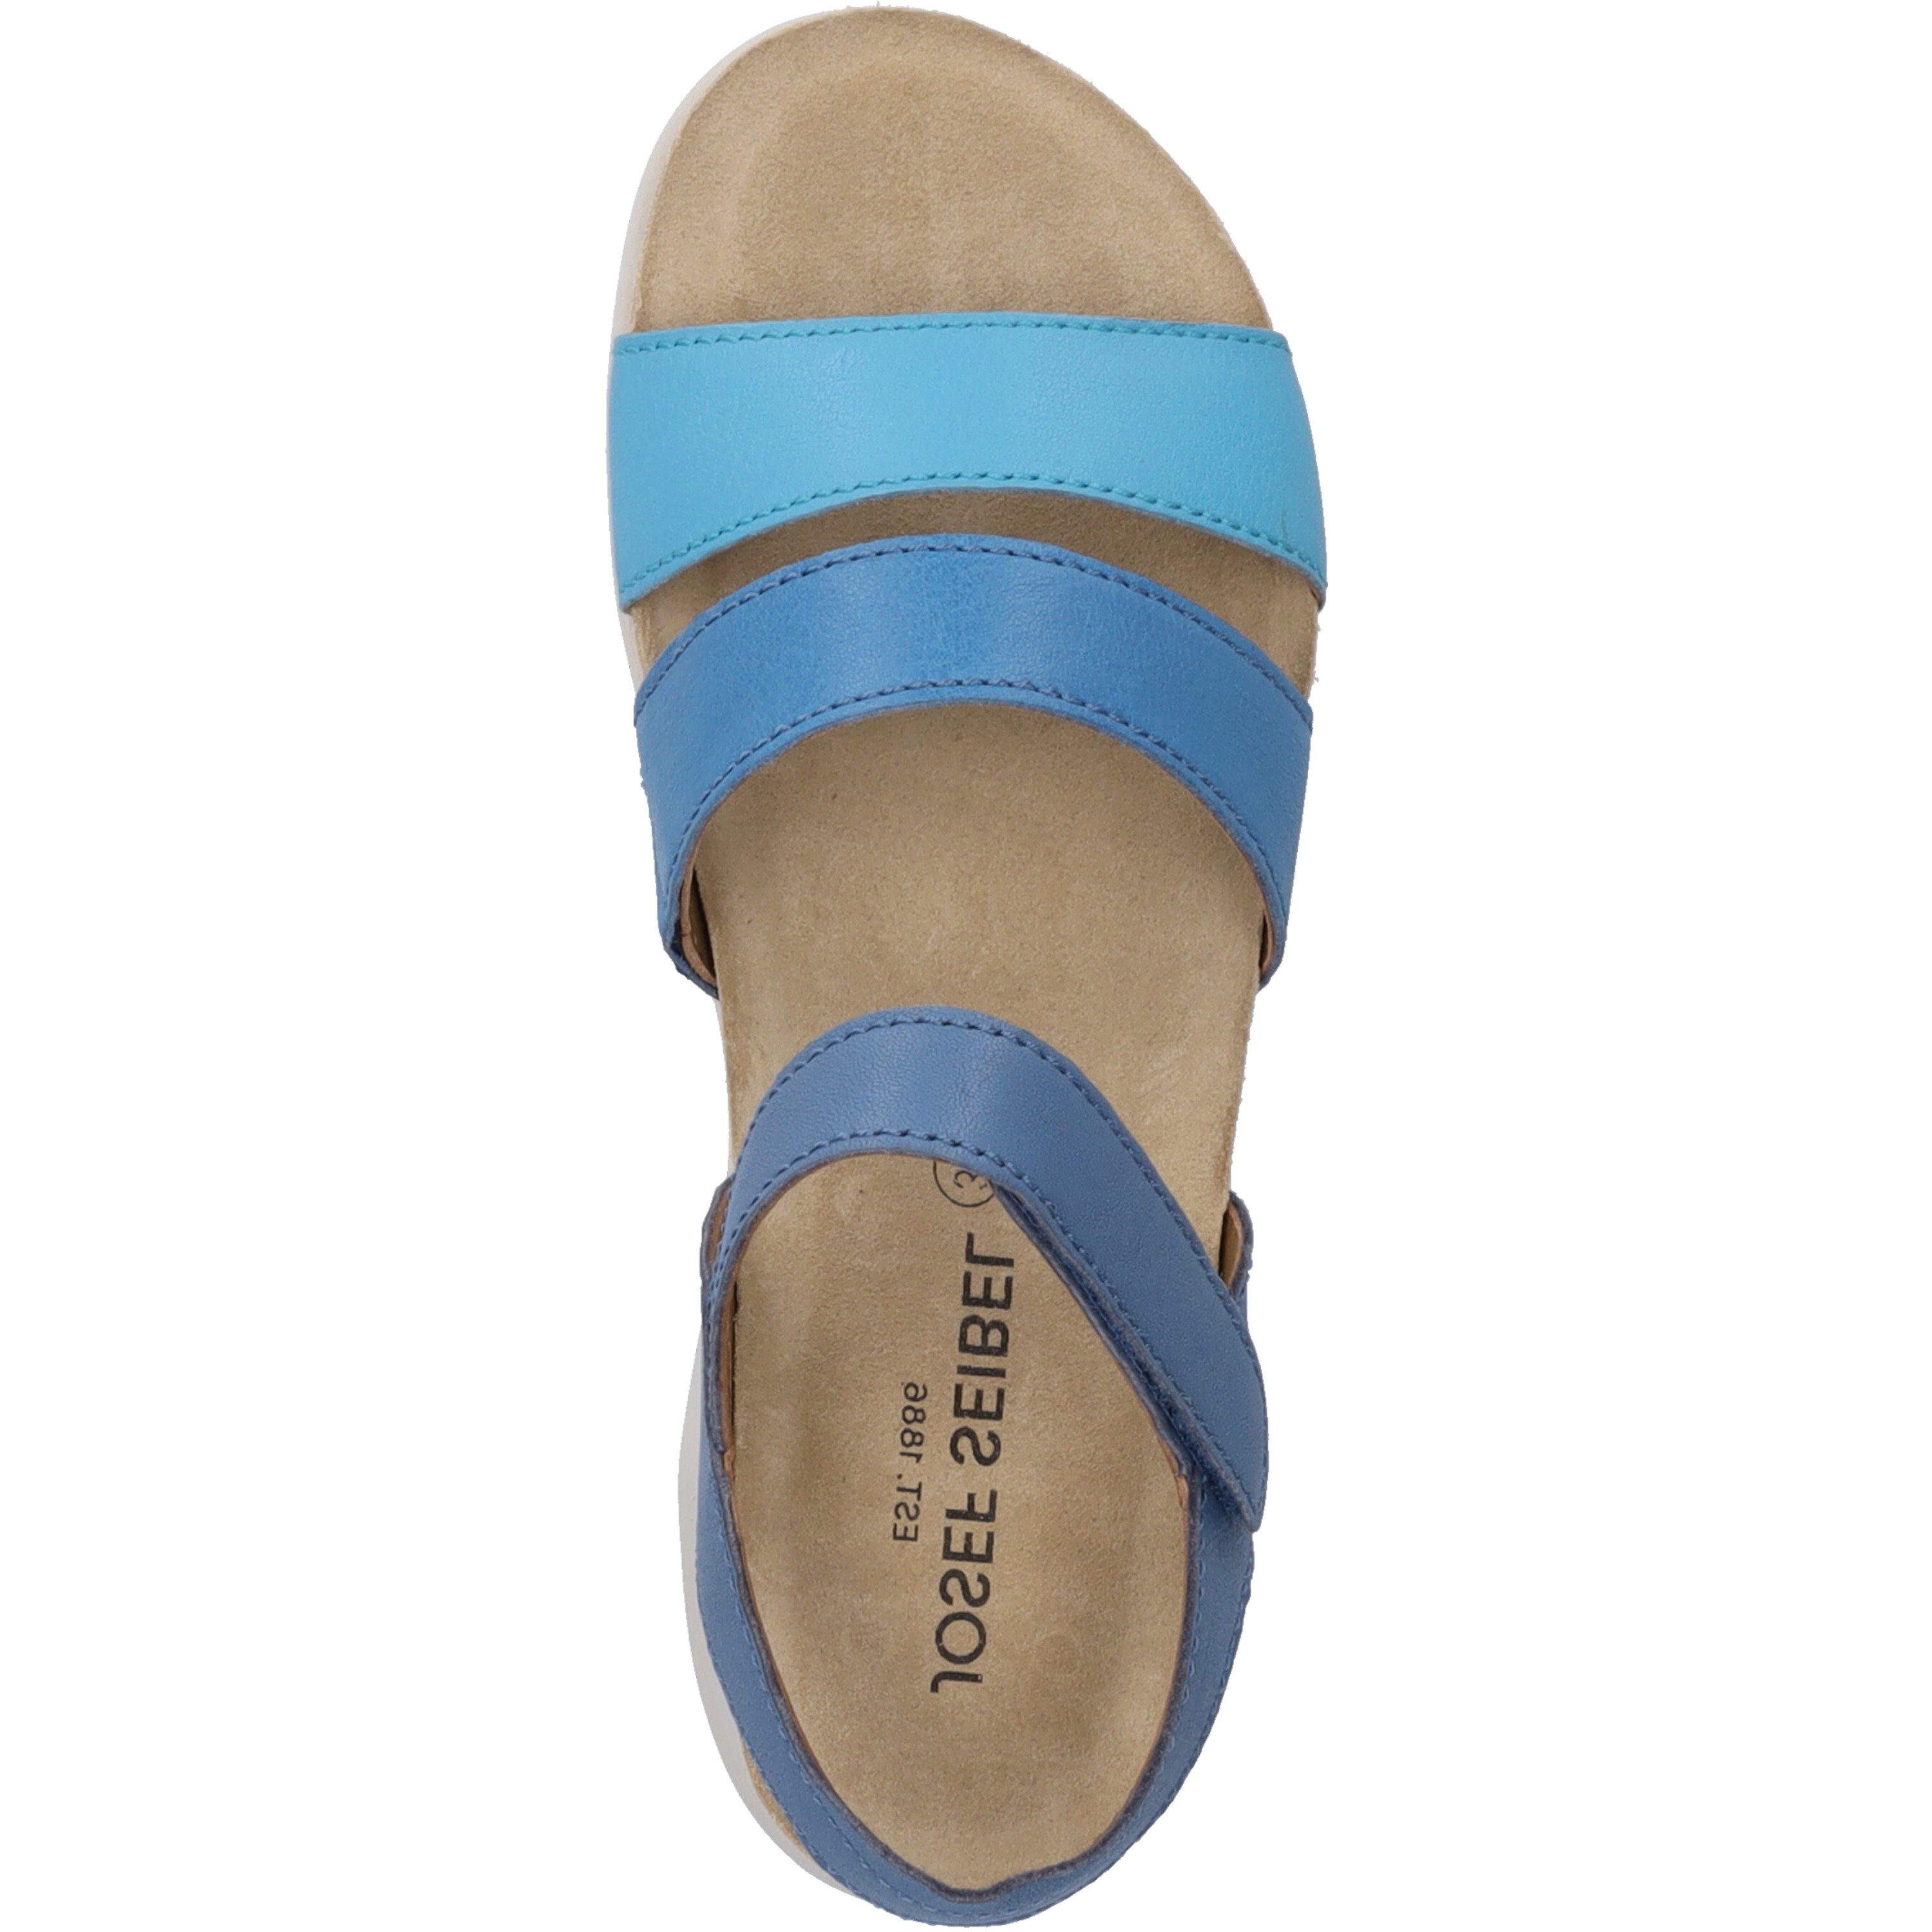 Sandale blau Josef 06, Seibel Celine blau-multi